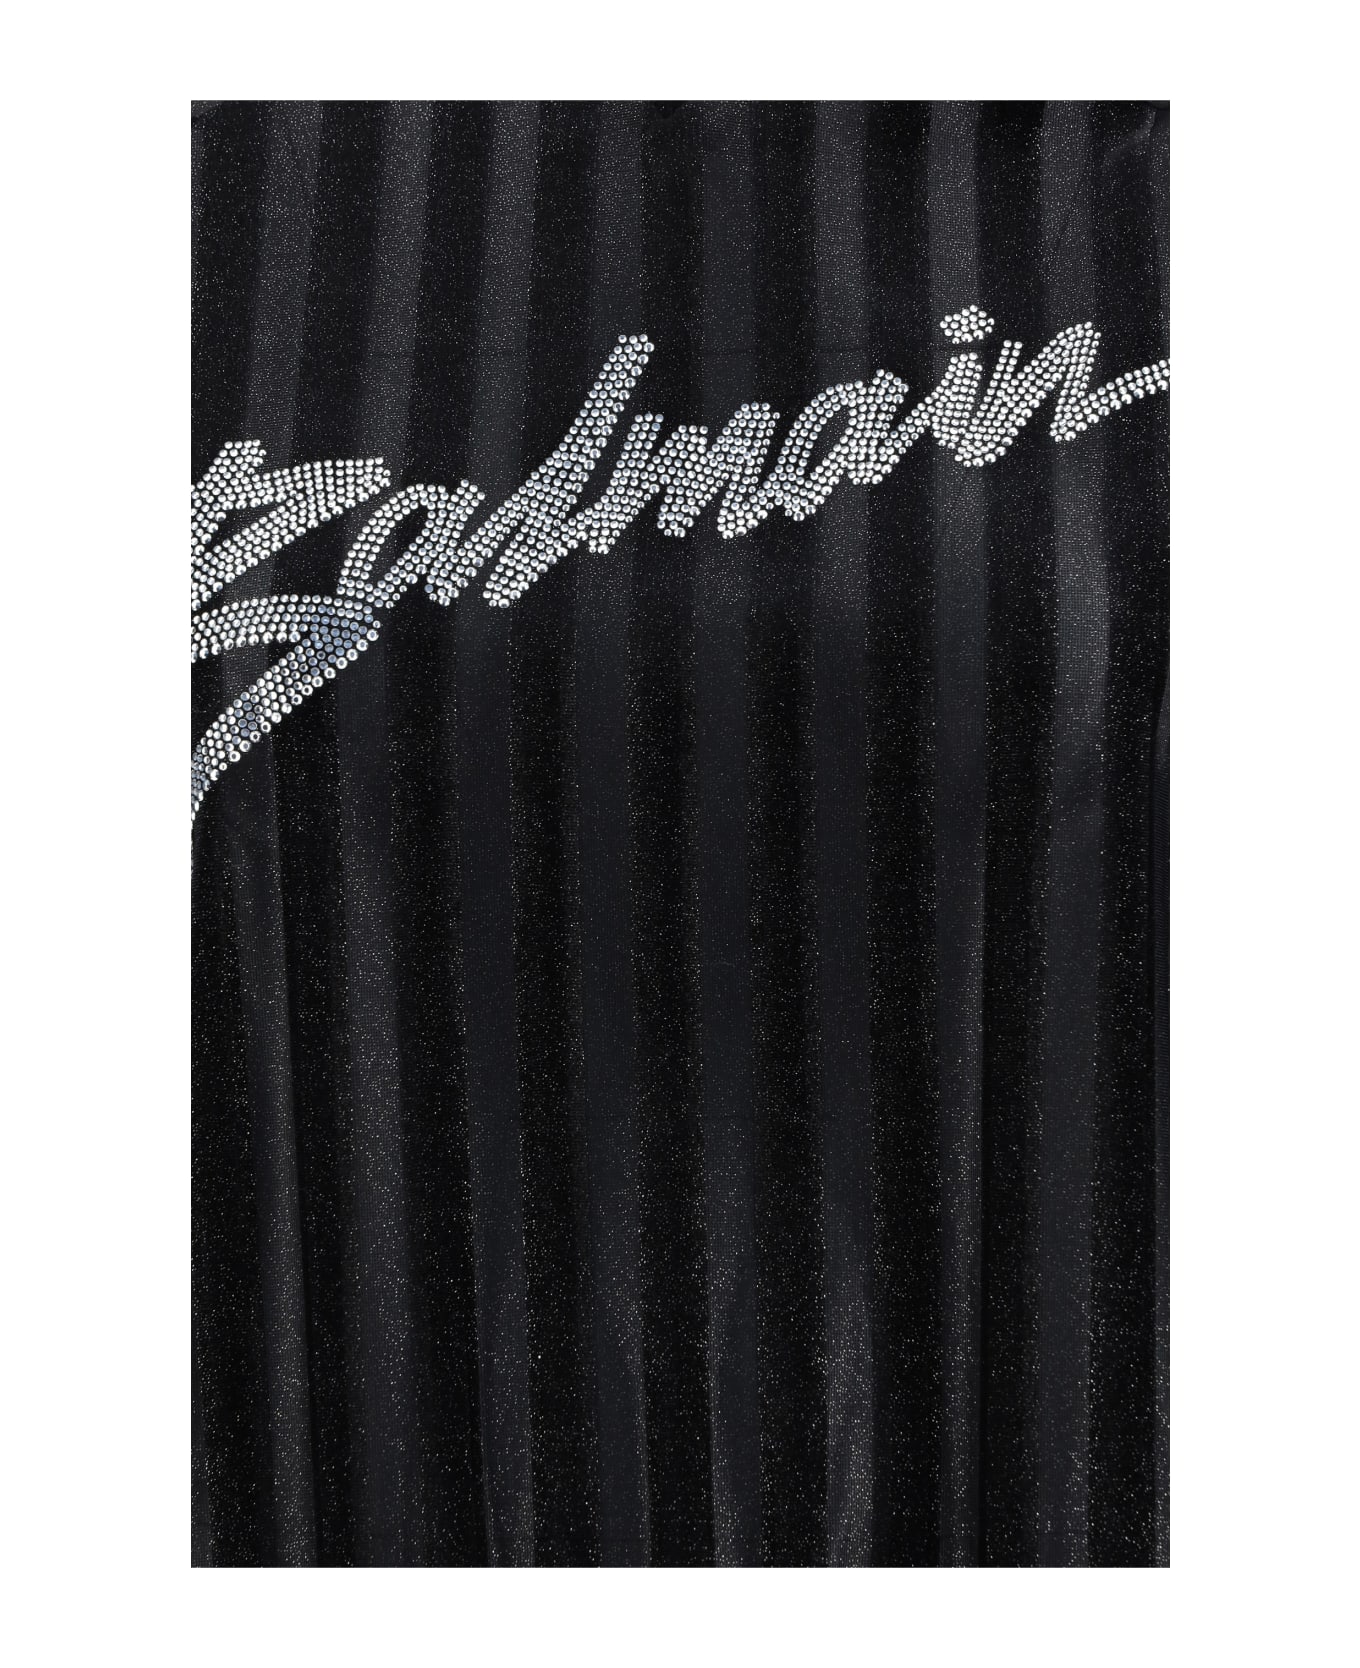 Balmain Turtleneck Sweater - Noir/argent ニットウェア